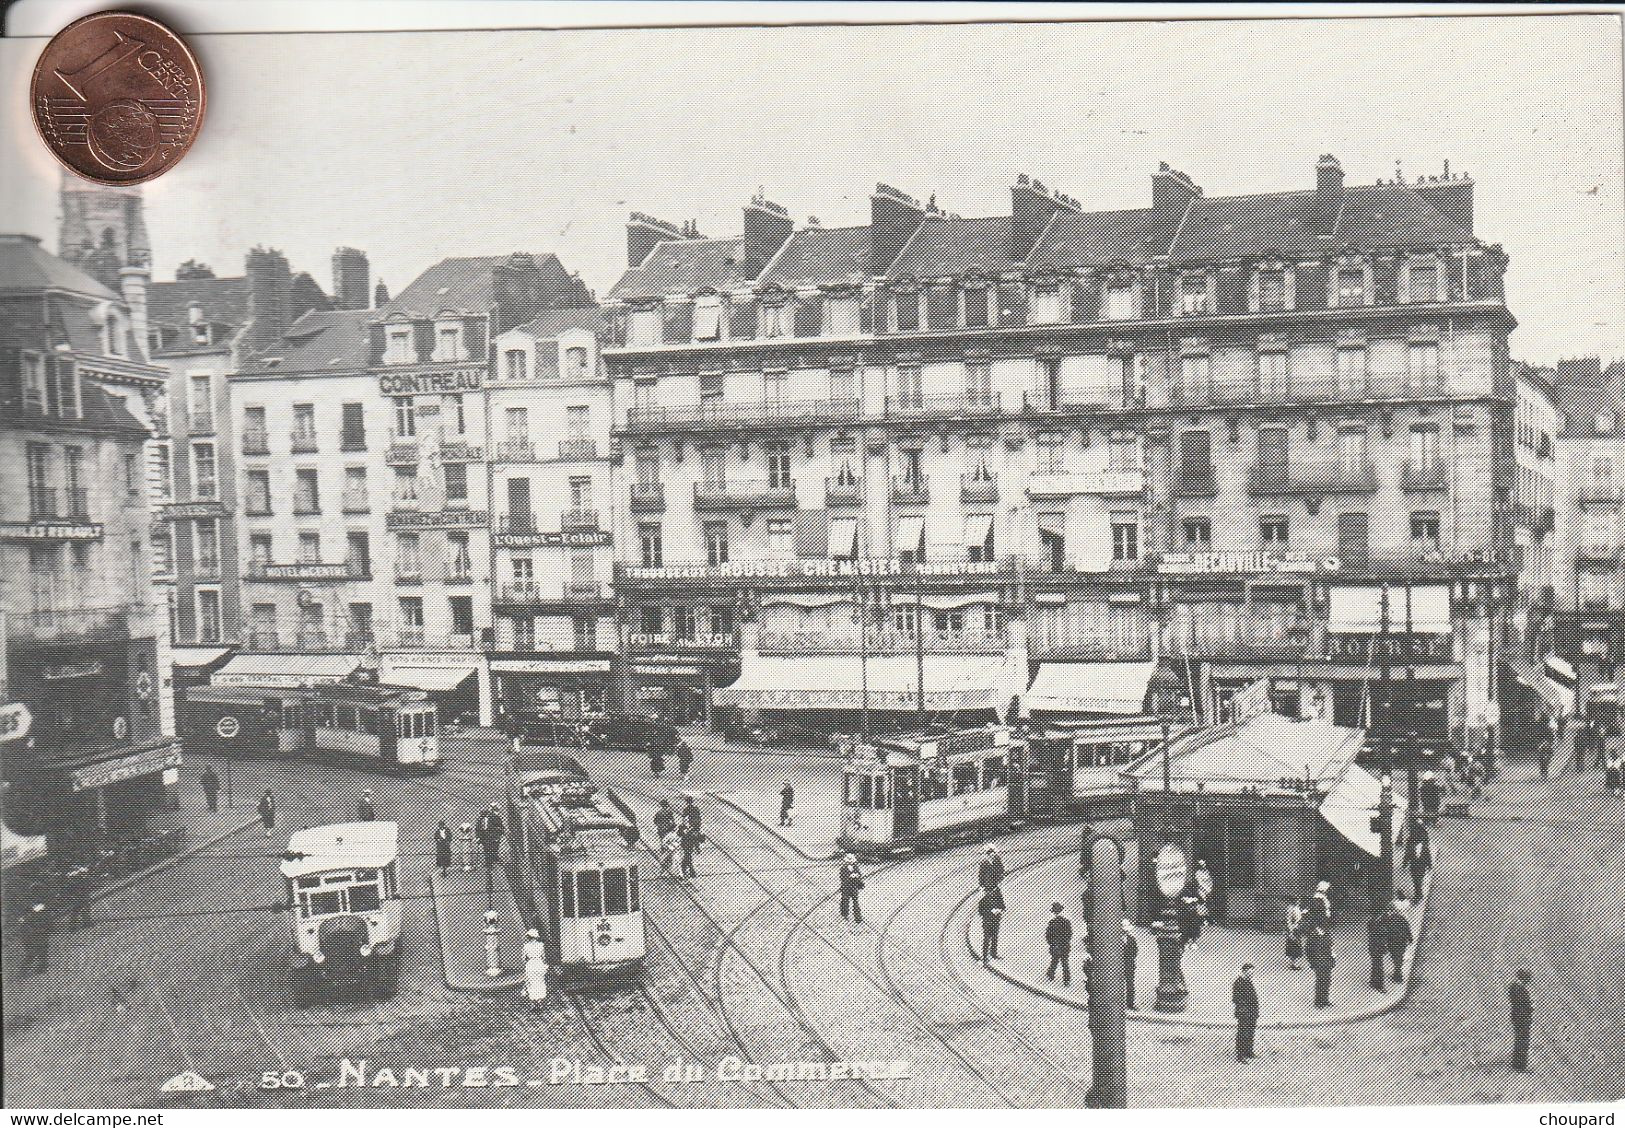 44 - Carte Postale De NANTES  Place Du Commerce   Editée Par Ouest France - Nantes